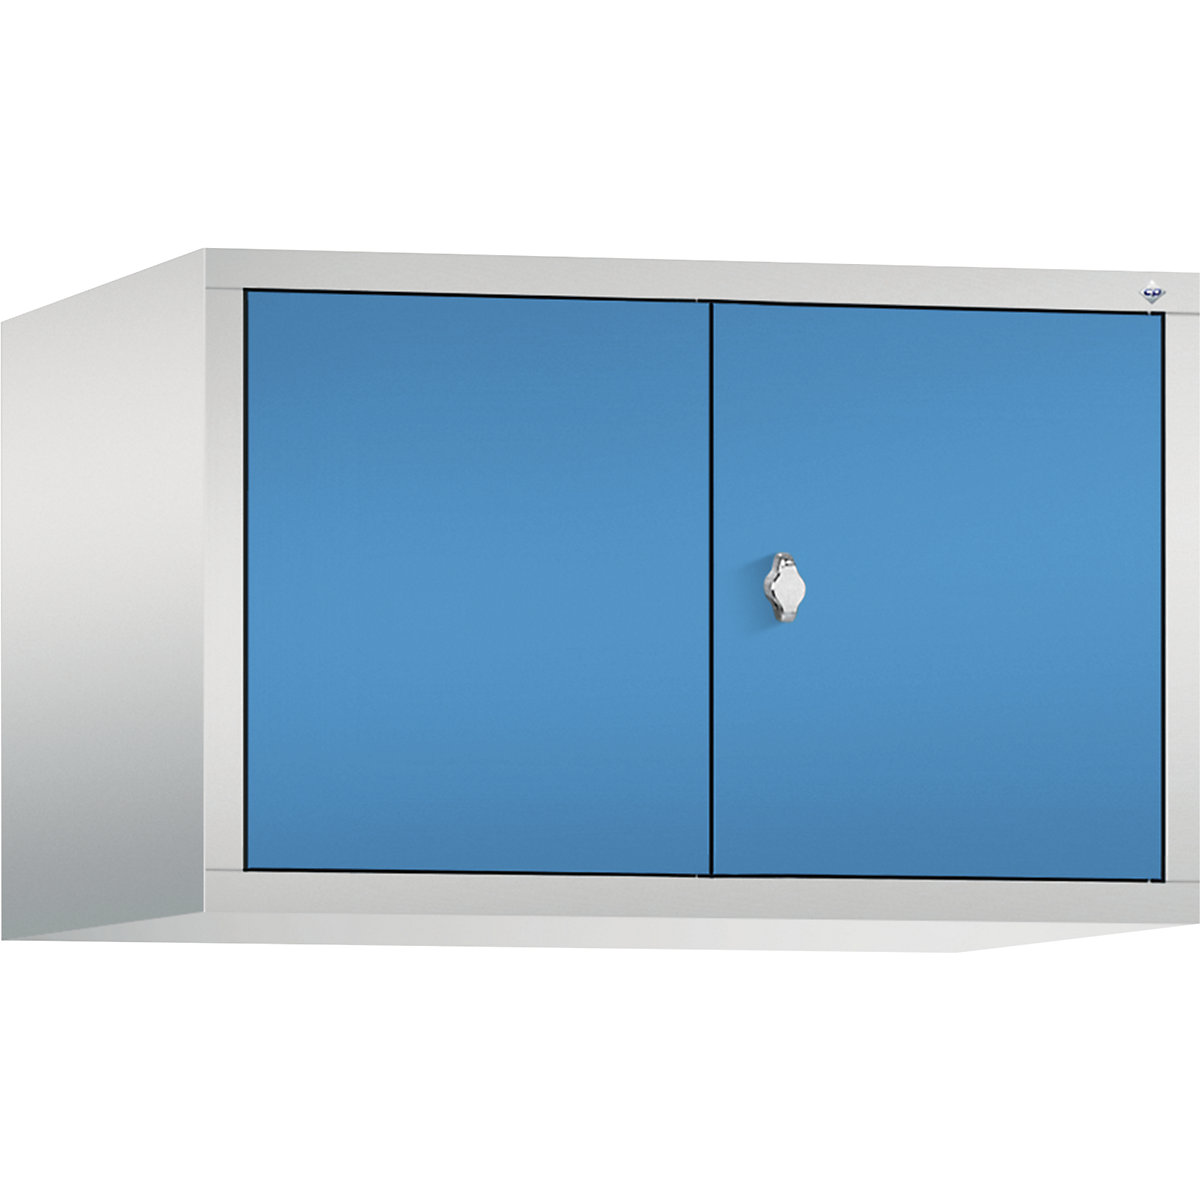 C+P – Altillo CLASSIC, puertas batientes que cierran al ras entre sí, 2 compartimentos, anchura de compartimento 400 mm, gris luminoso / azul luminoso